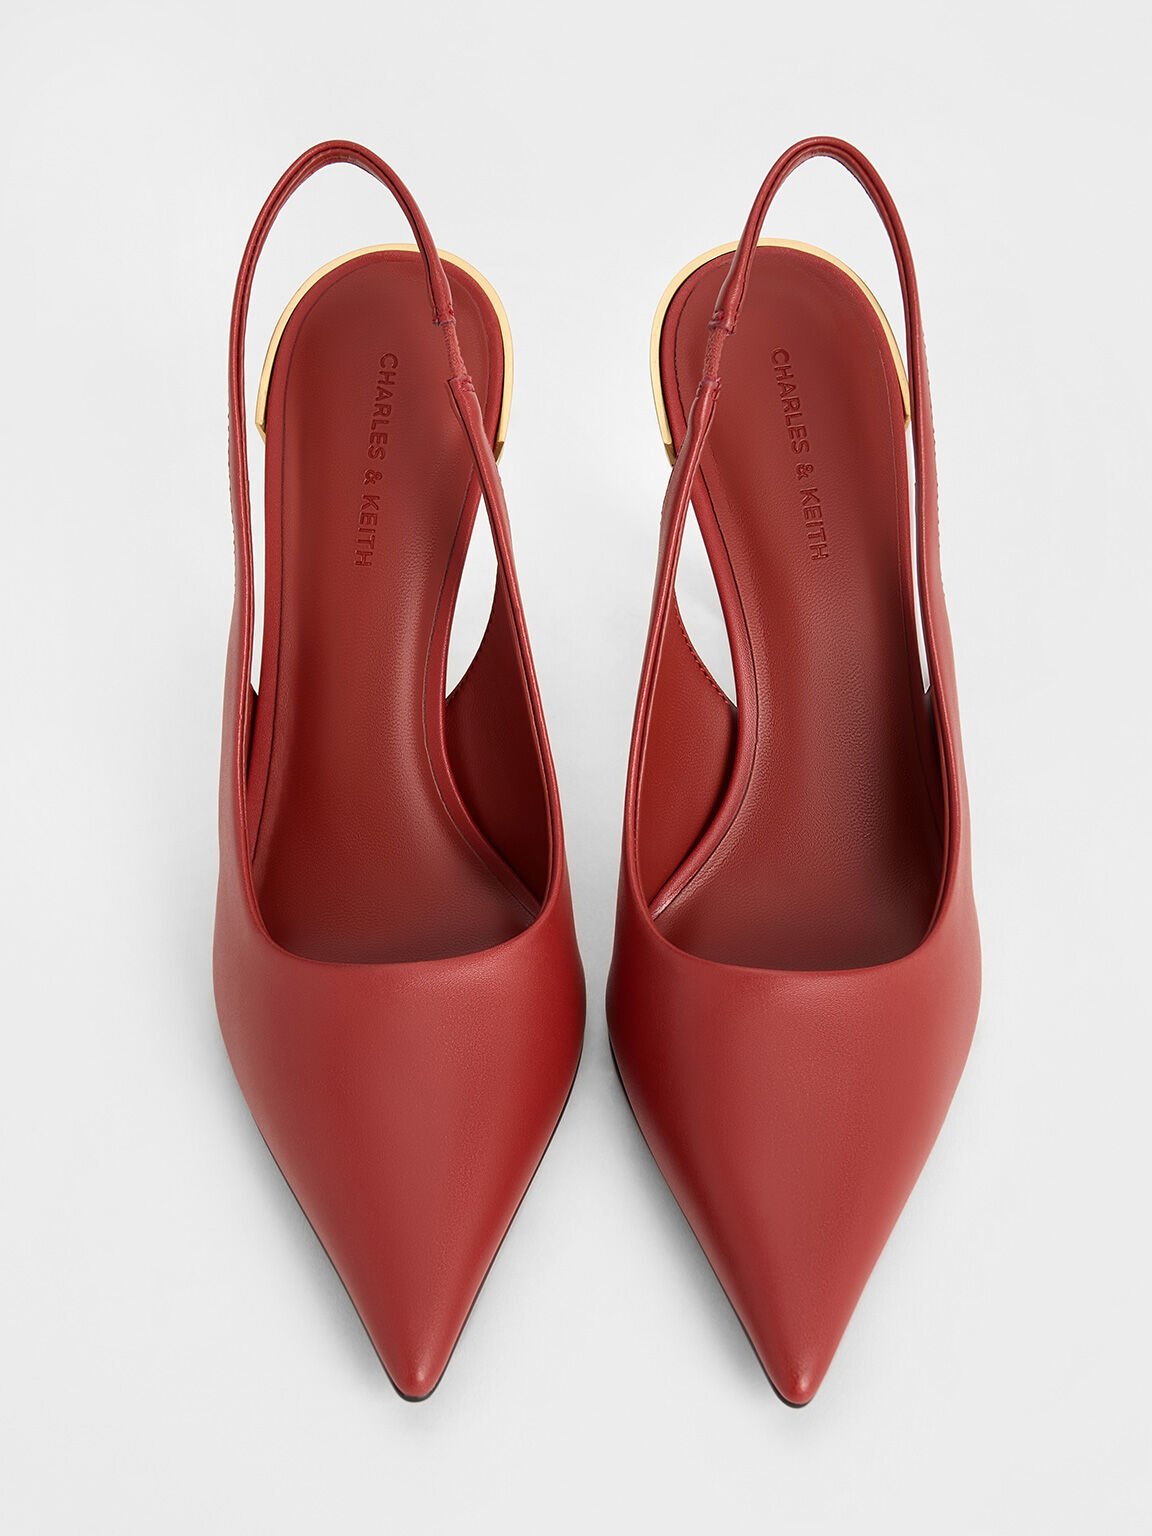 Zapatos destalonados metálicos de punta afilada con tacón de aguja, Rojo ladrillo, hi-res